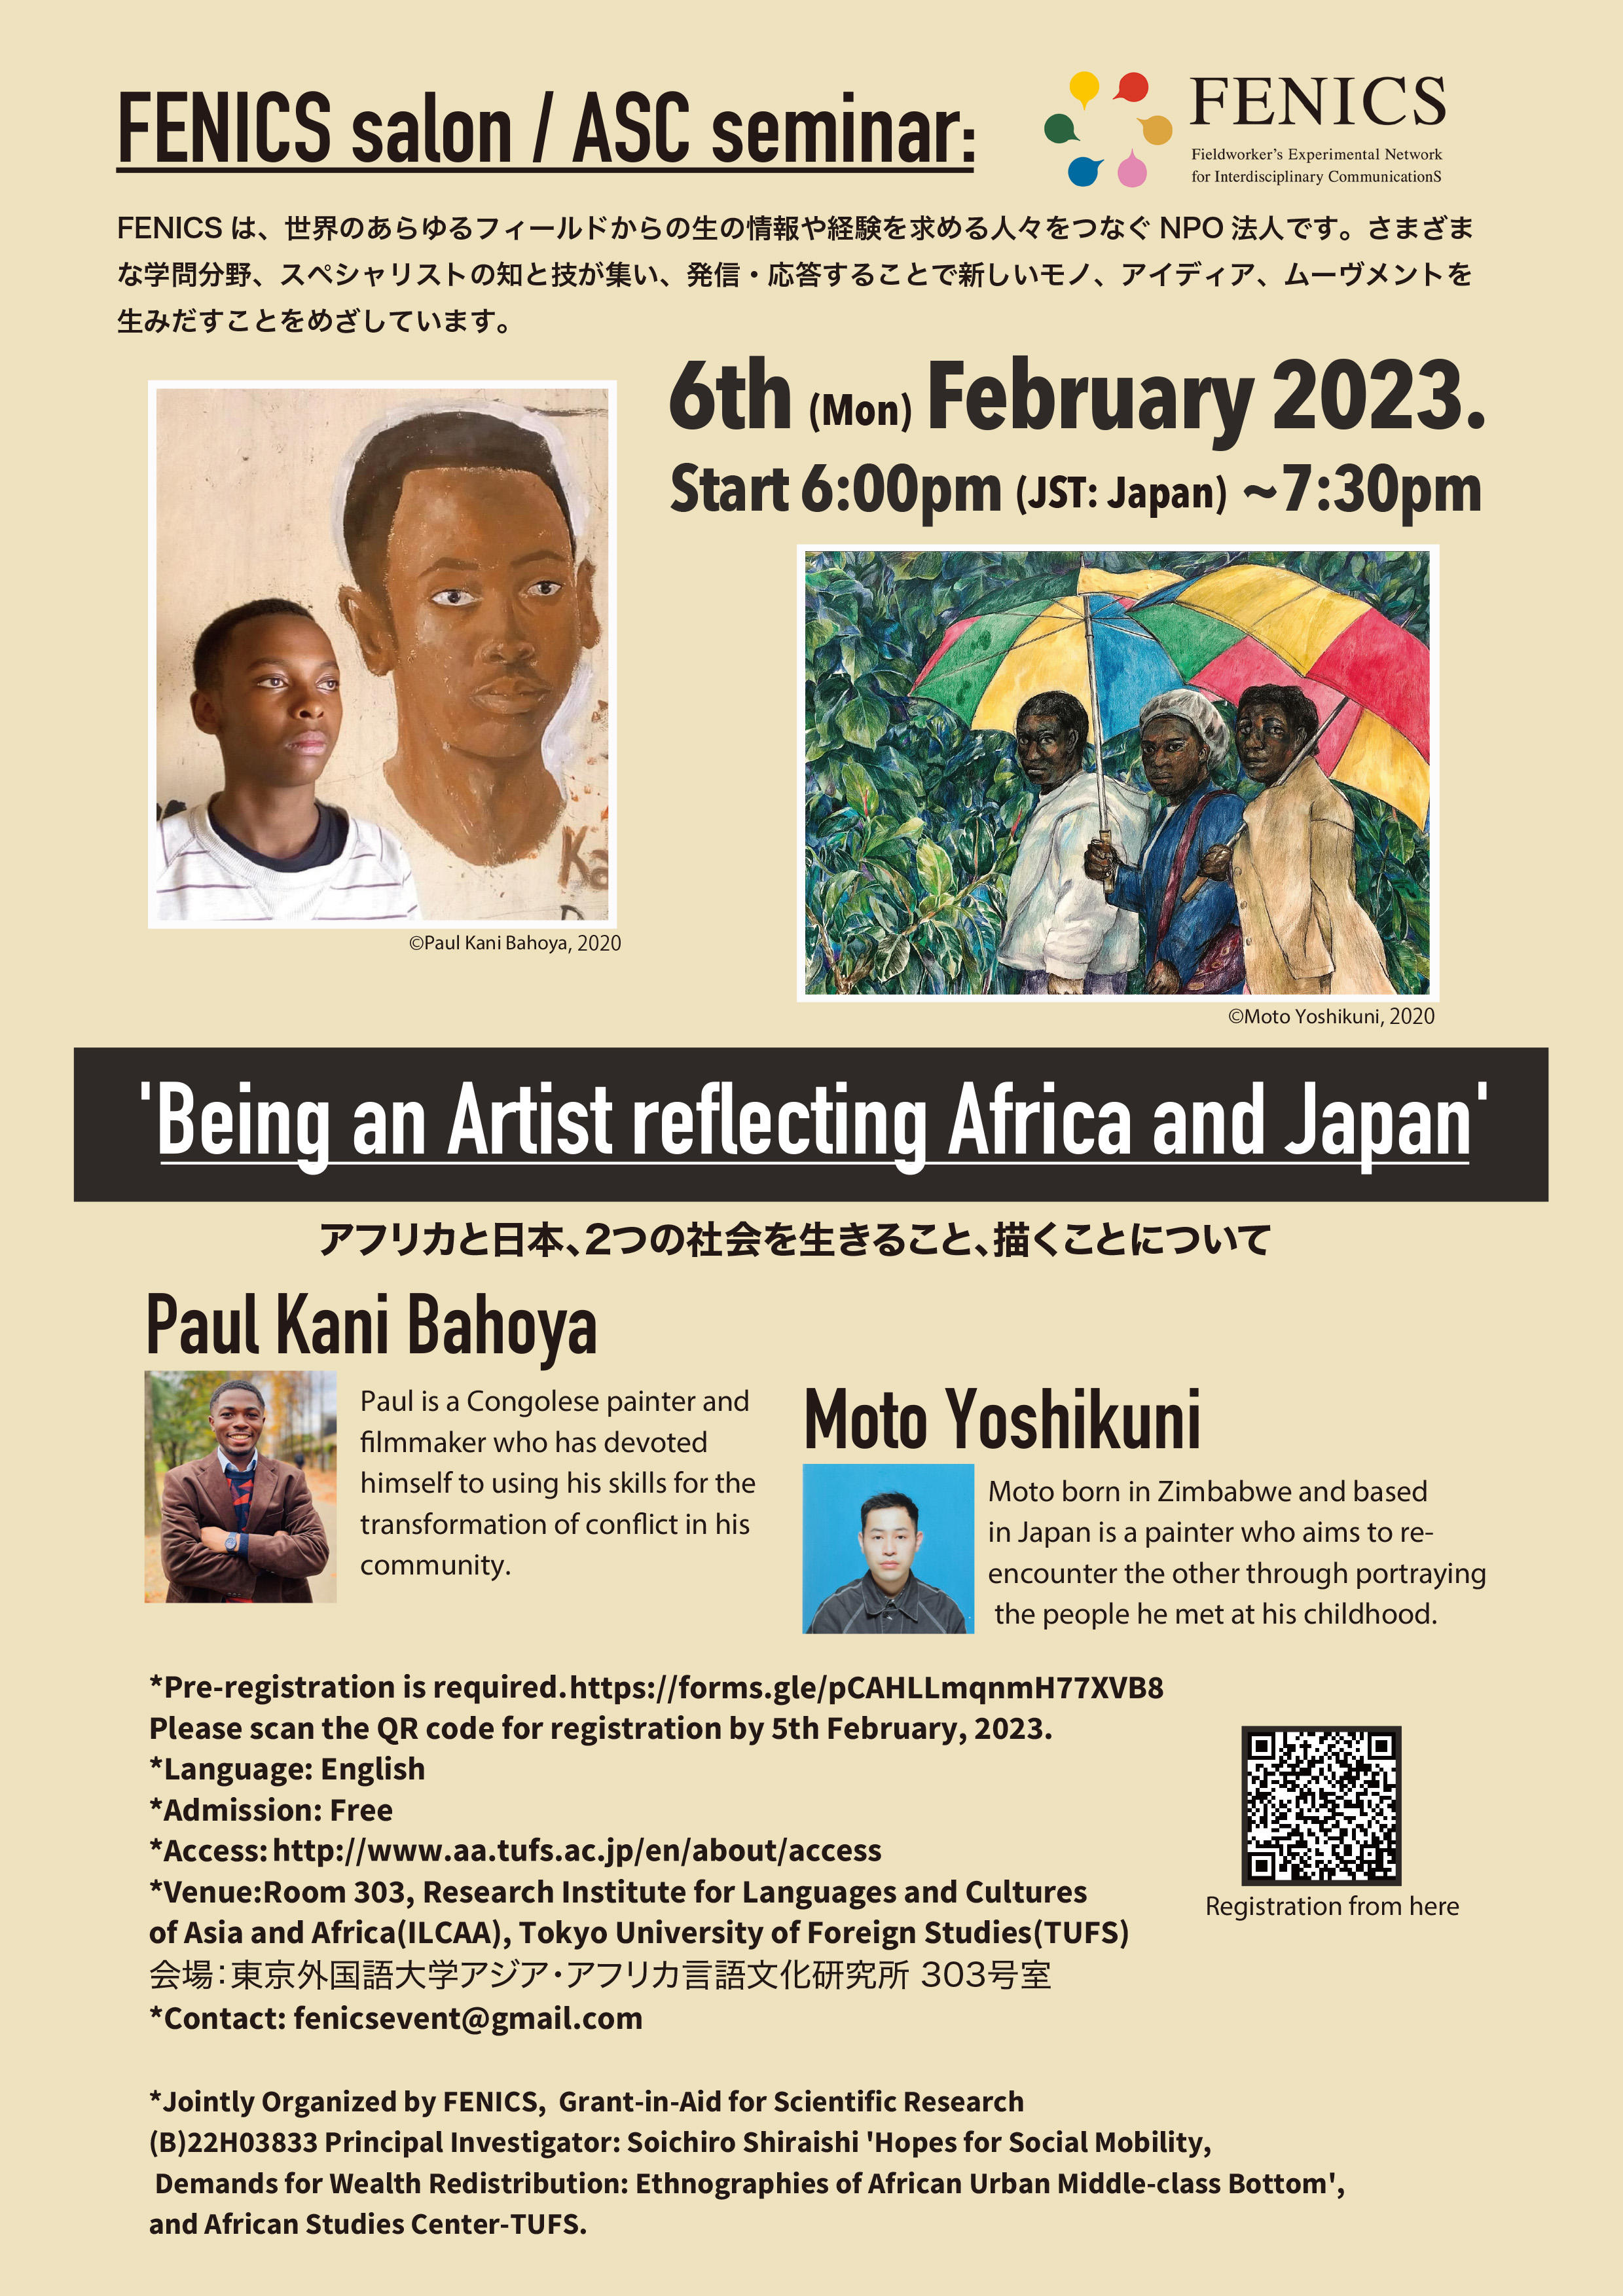 トークイベント：アフリカと日本、2つの社会を生きること、描くことについて